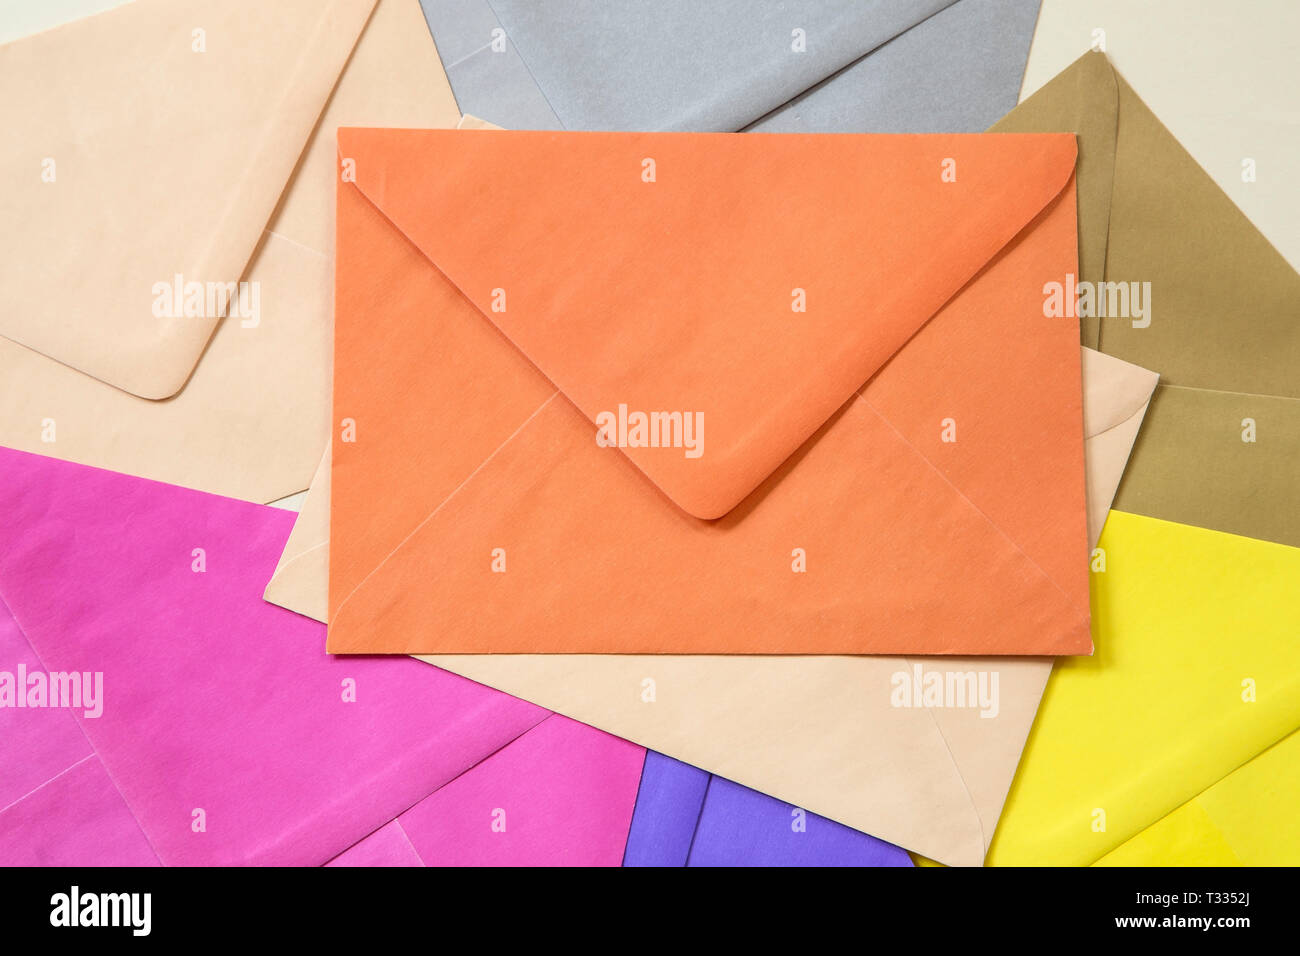 La pile d'enveloppes colorées Banque D'Images